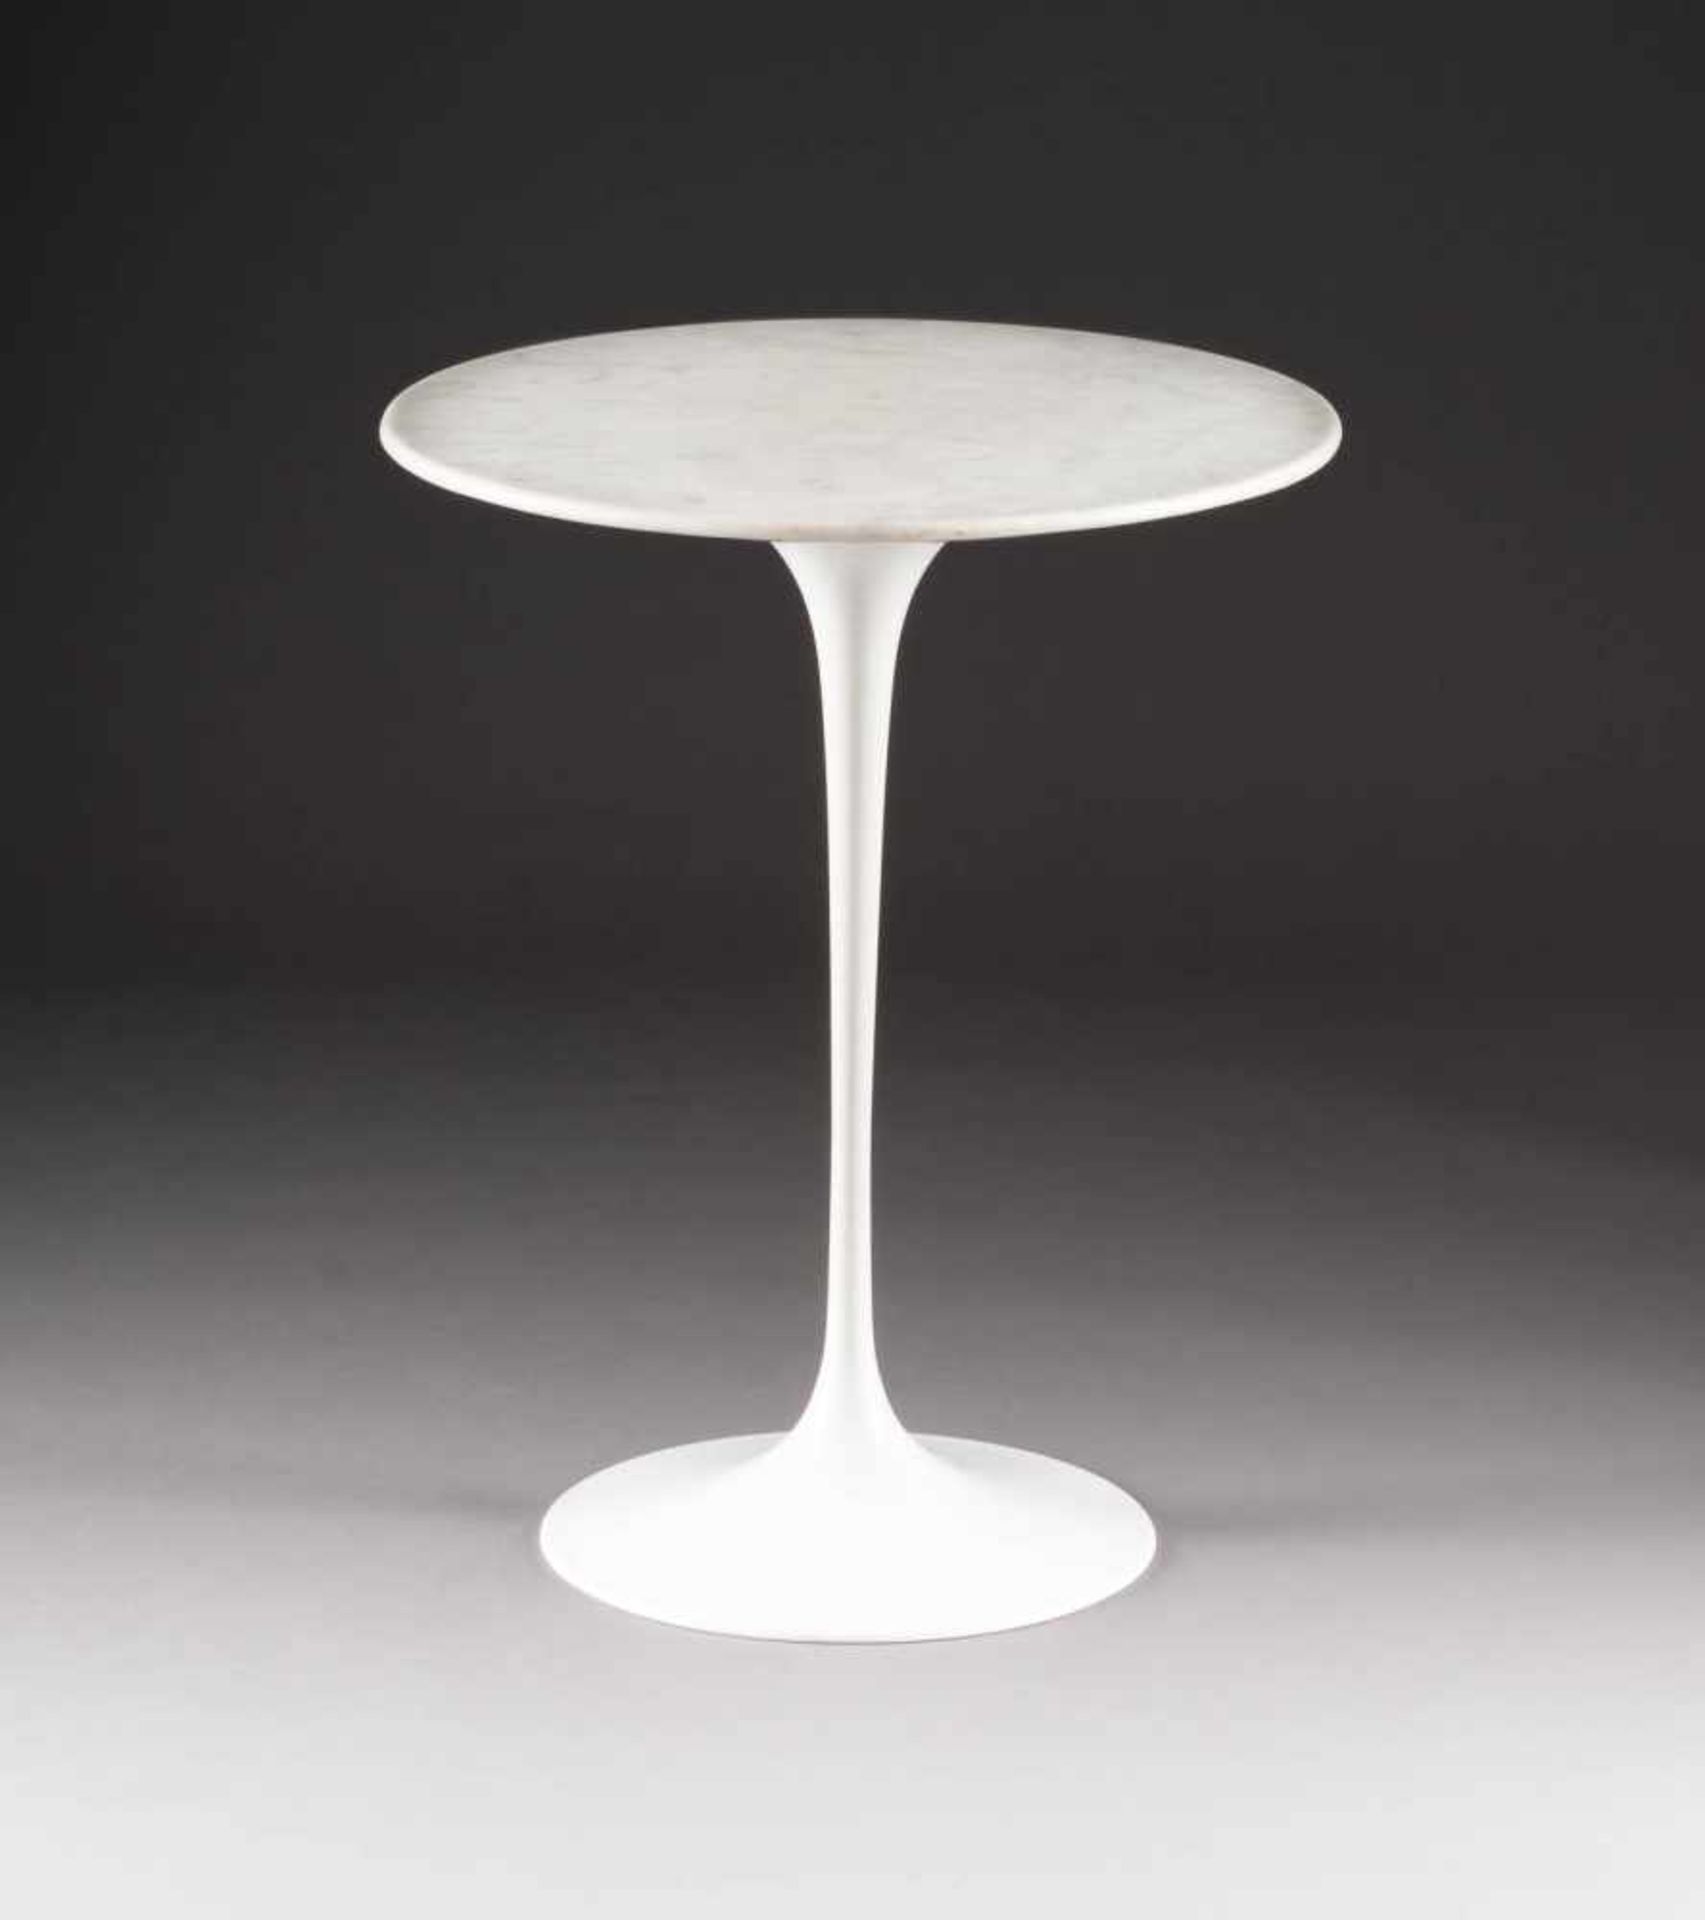 EERO SAARINEN (ATTR.)1910 Kirrkonummi - 1961 Ann ArborBEISTELLTISCH 'TULIP TABLE' Ausführung in